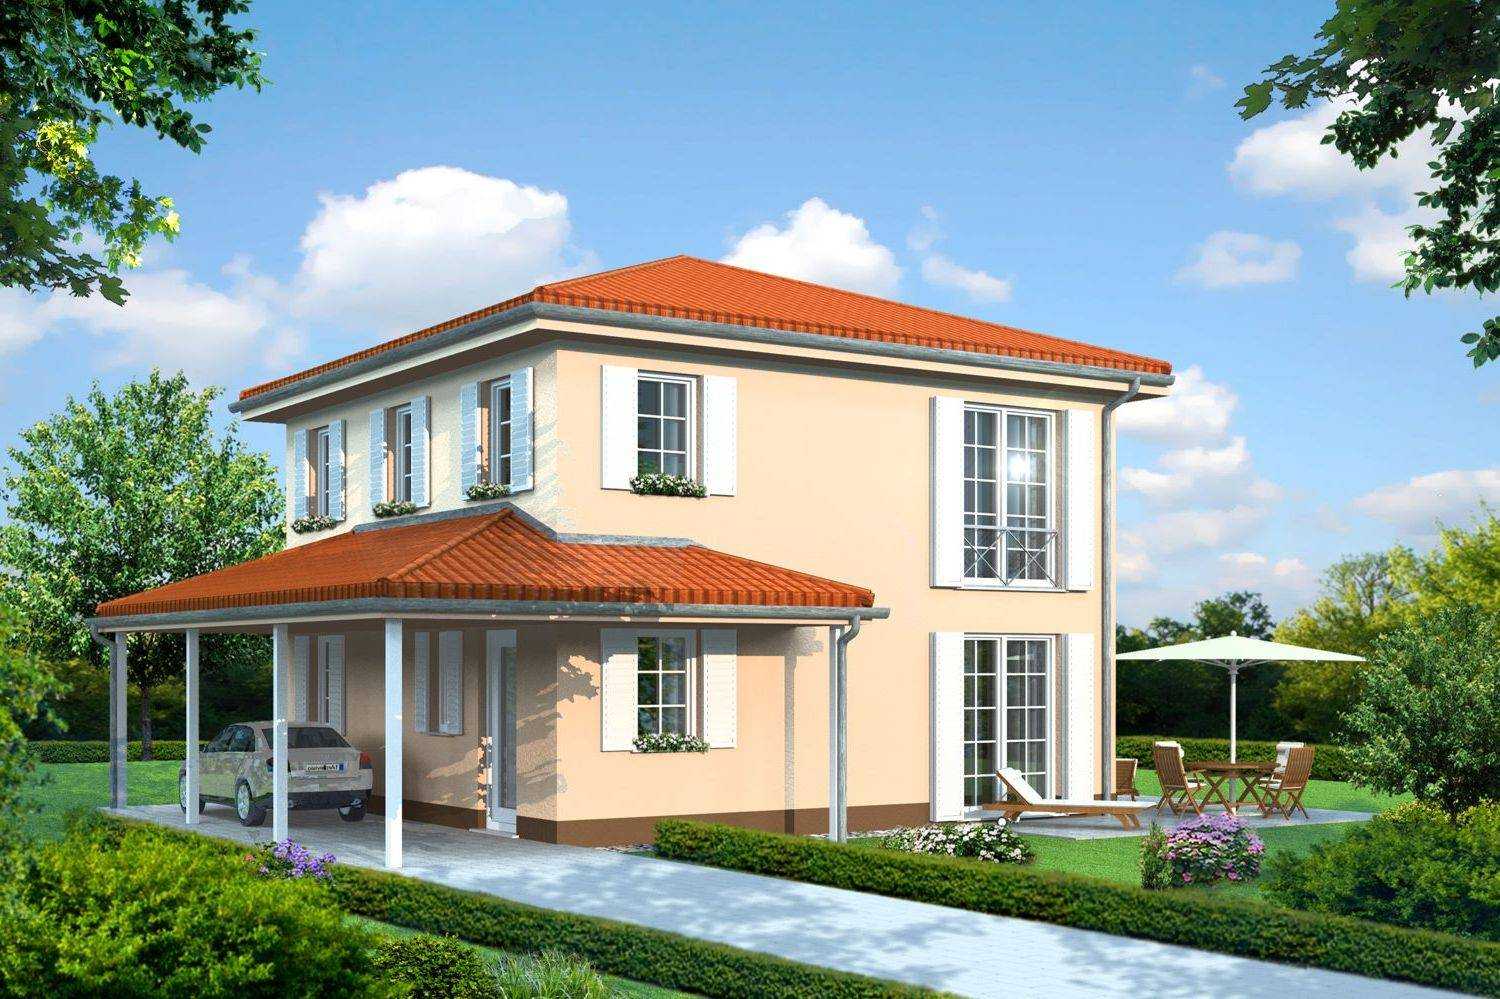 Architekturvisualisierung mediterrane Villa mit integriertem Carport, Sprossenfenstern und Flügel-Fensterläden für Bauideen21 GmbH (Jahr 2009)